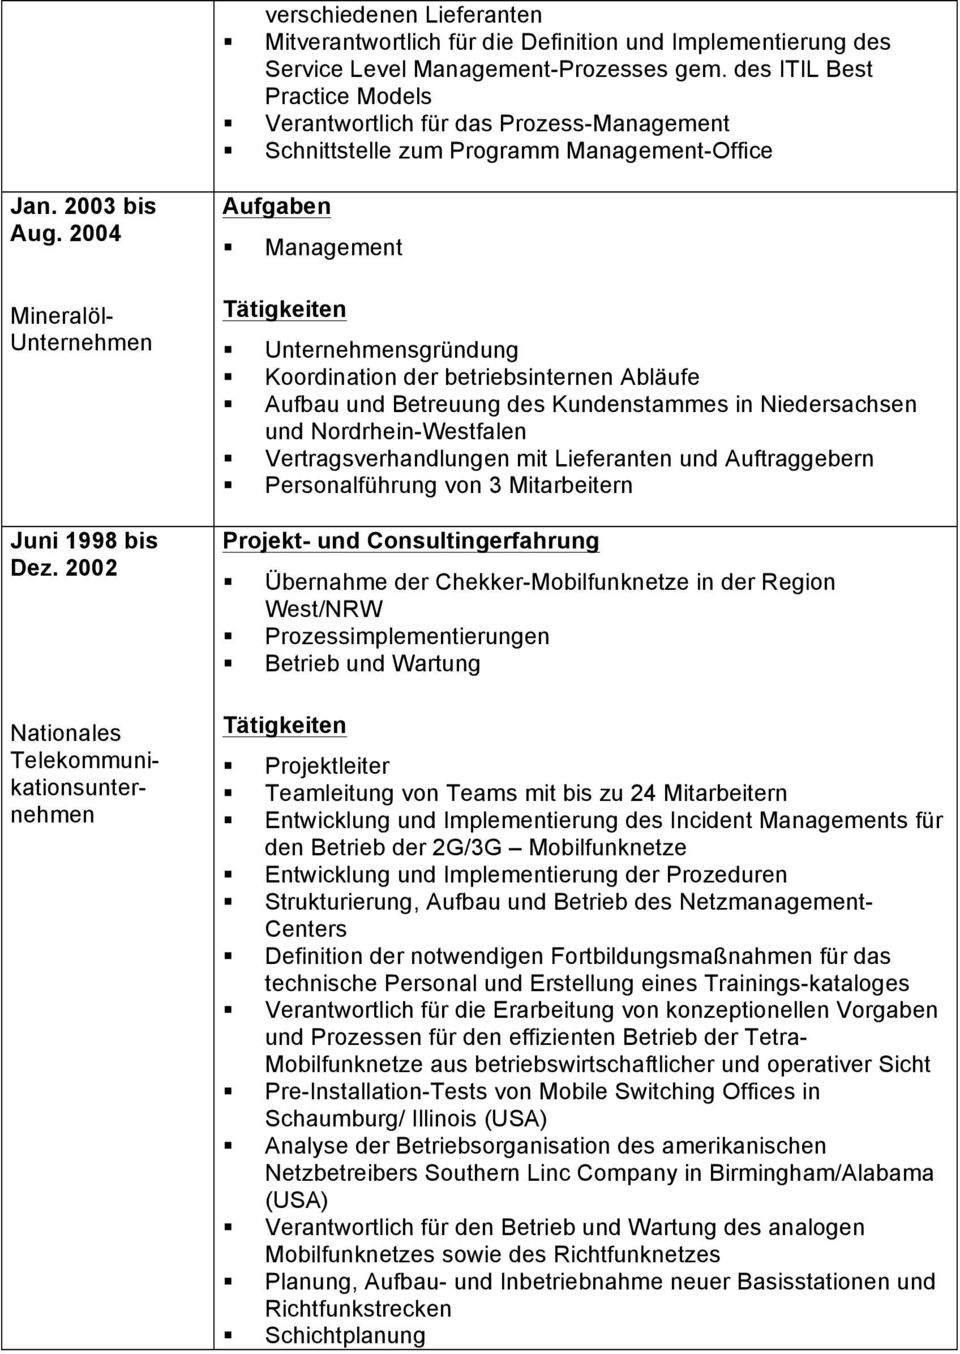 2002 Nationales Aufgaben Management Unternehmensgründung Koordination der betriebsinternen Abläufe Aufbau und Betreuung des Kundenstammes in Niedersachsen und Nordrhein-Westfalen